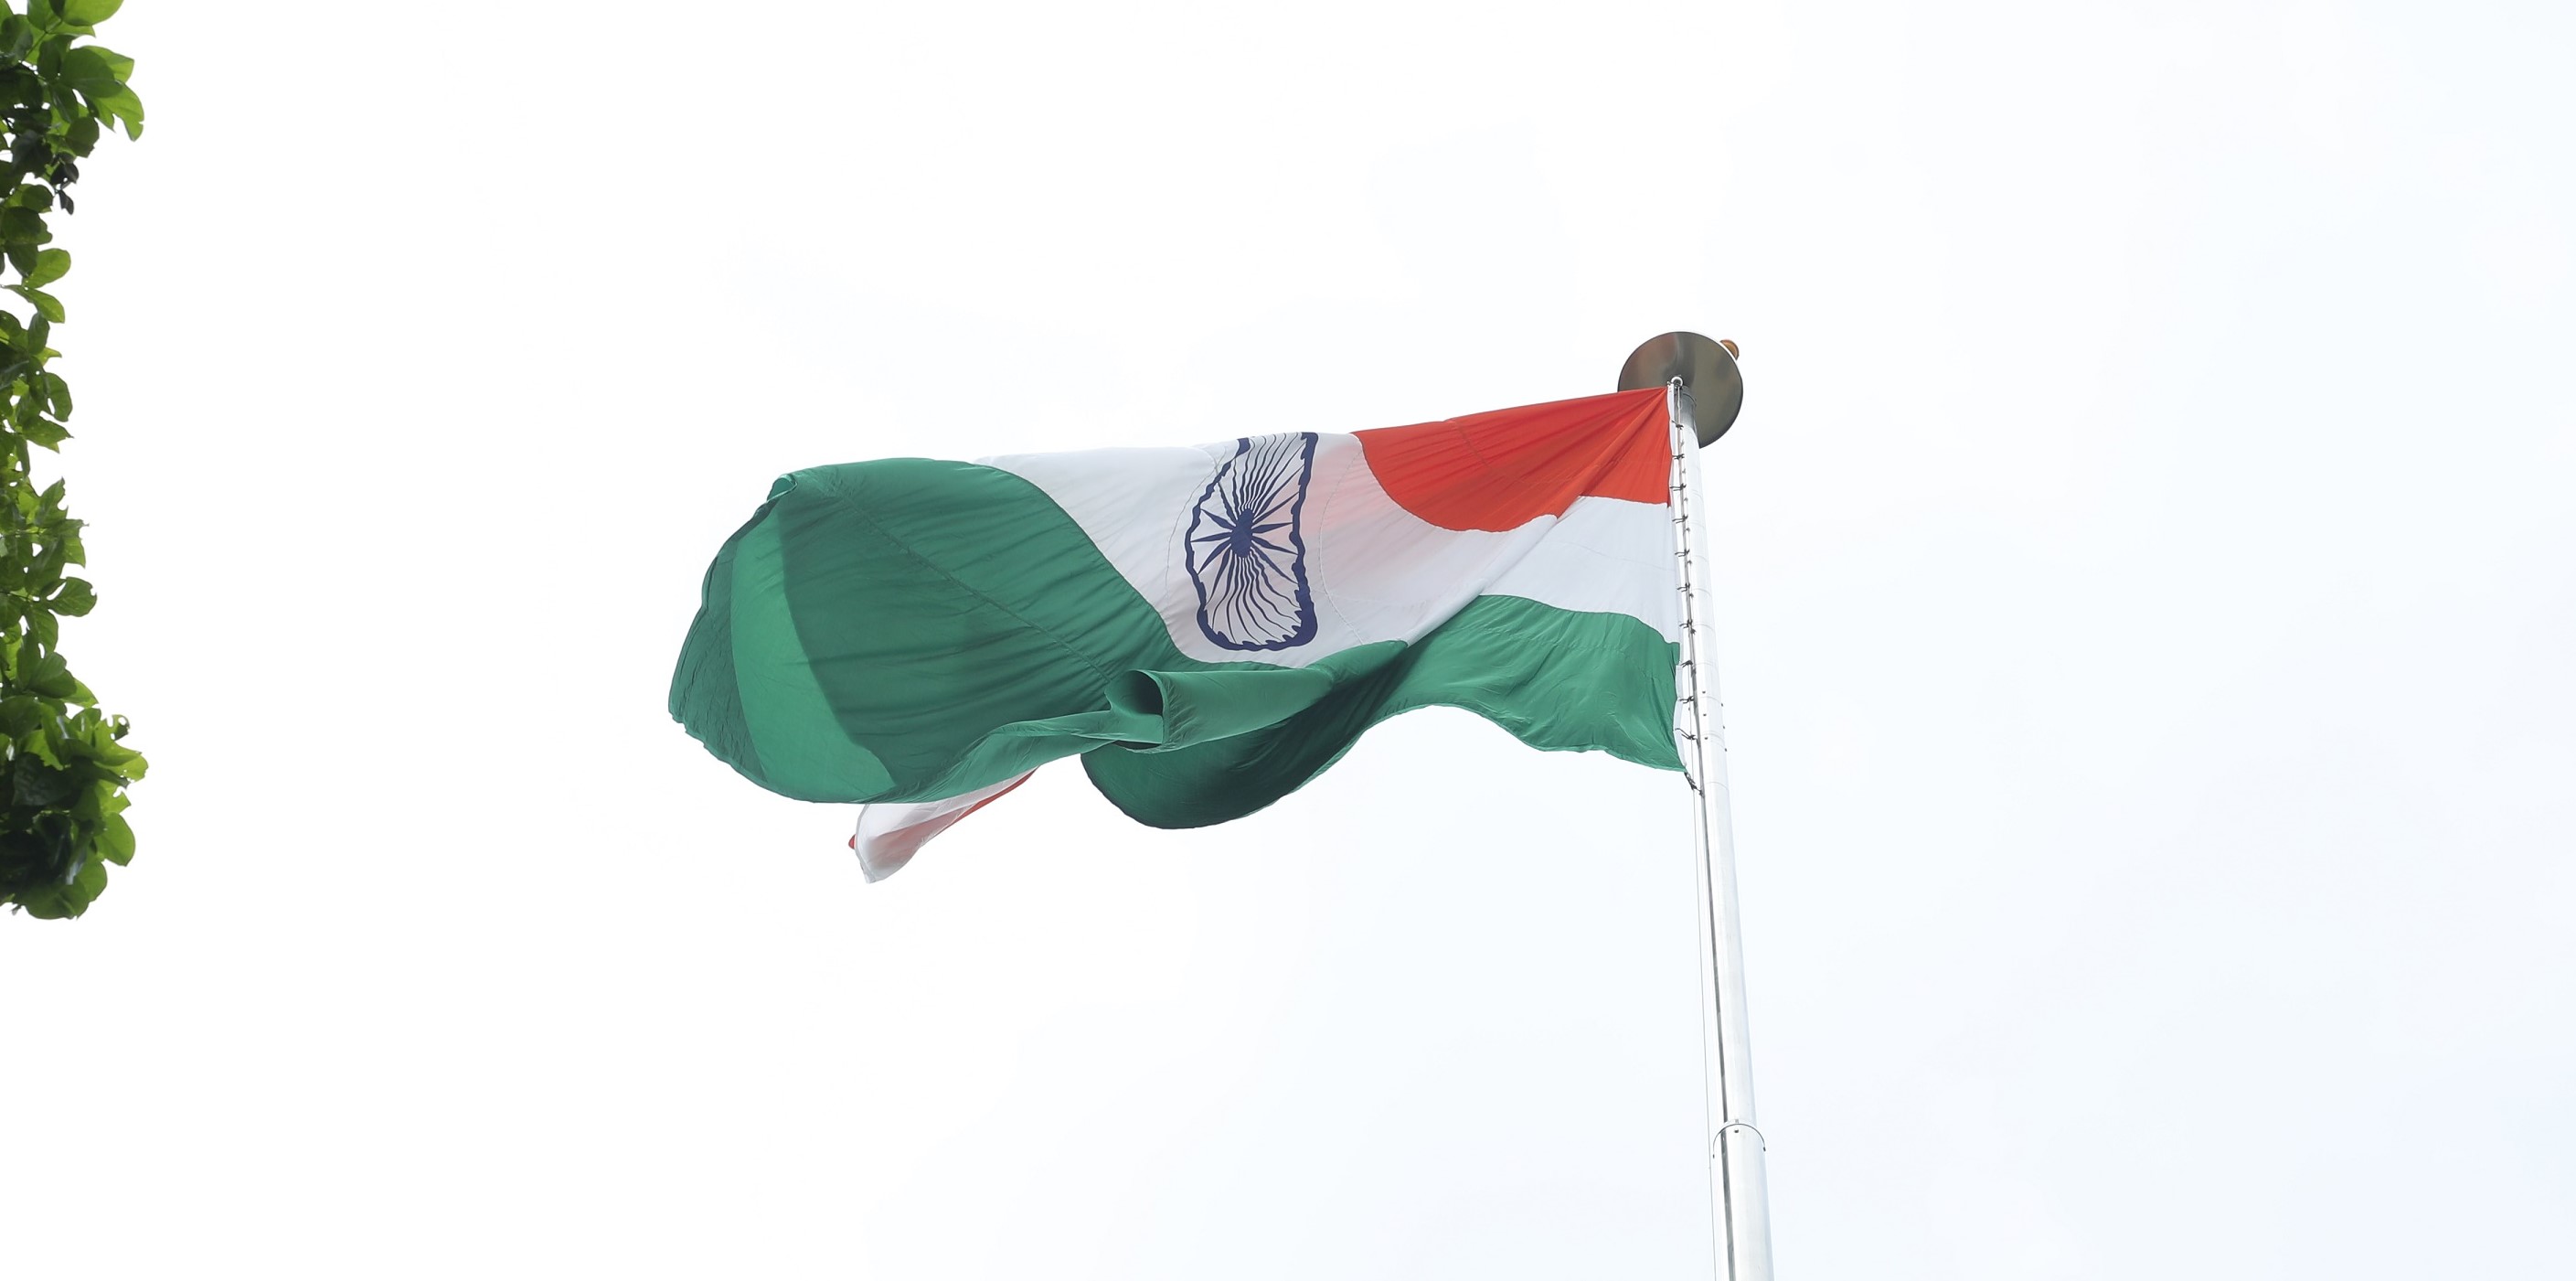 Tiranga India's Largest Flag